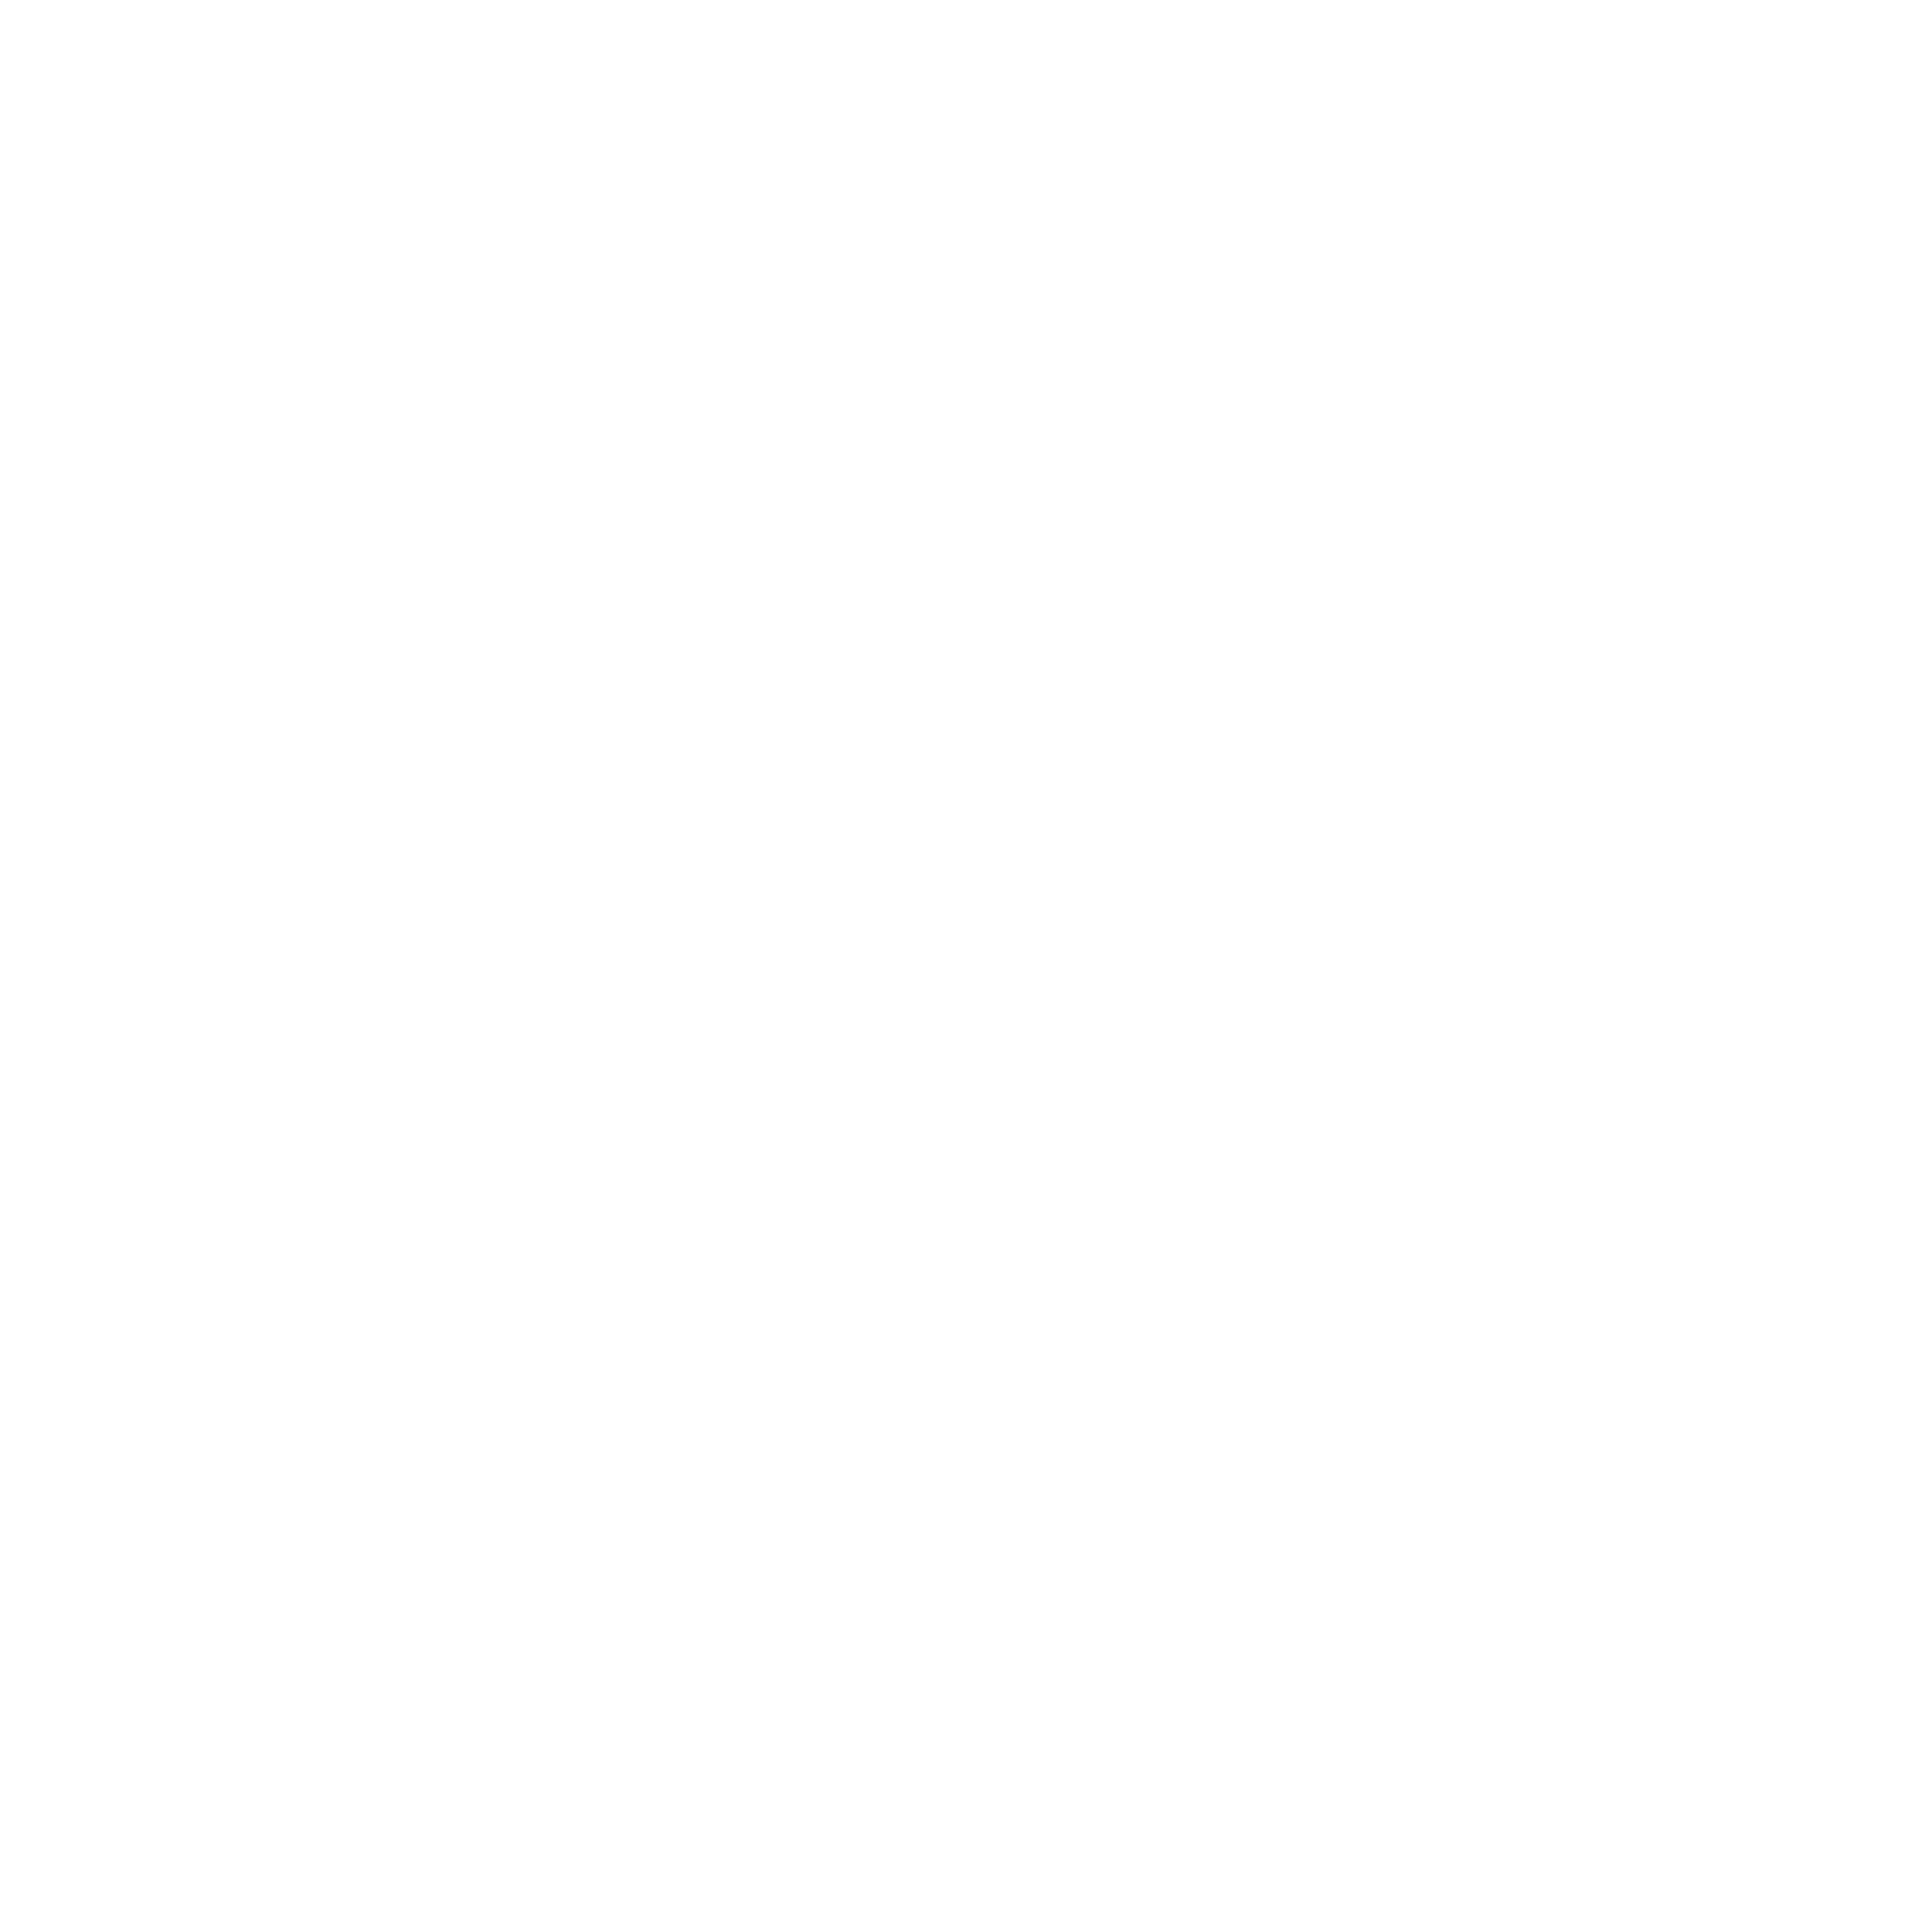 Joburg Logos for Web 2022 HSBC white